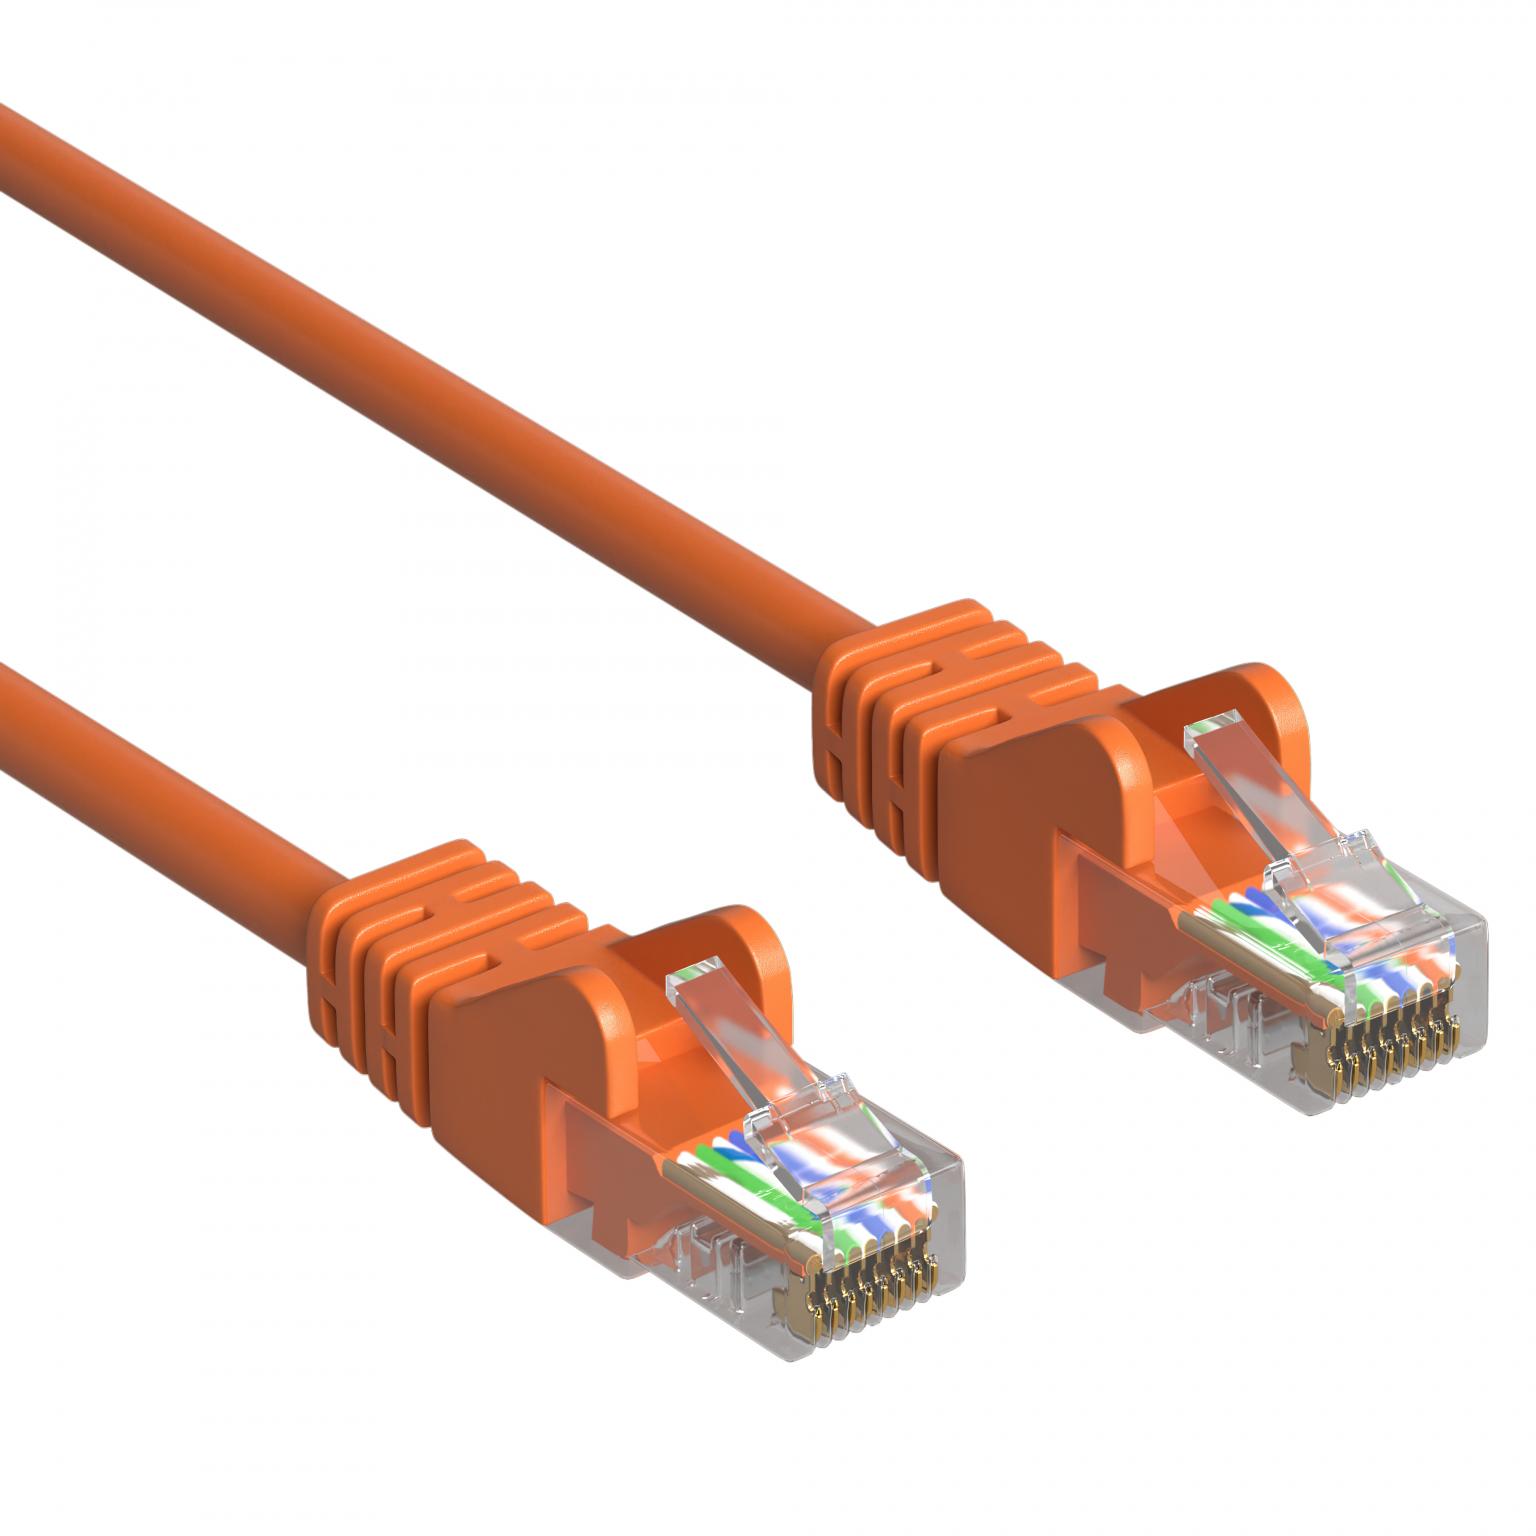 natuurlijk Rimpelingen uitzending UTP kabel 25 meter kopen | internet kabels | Allekabels.nl